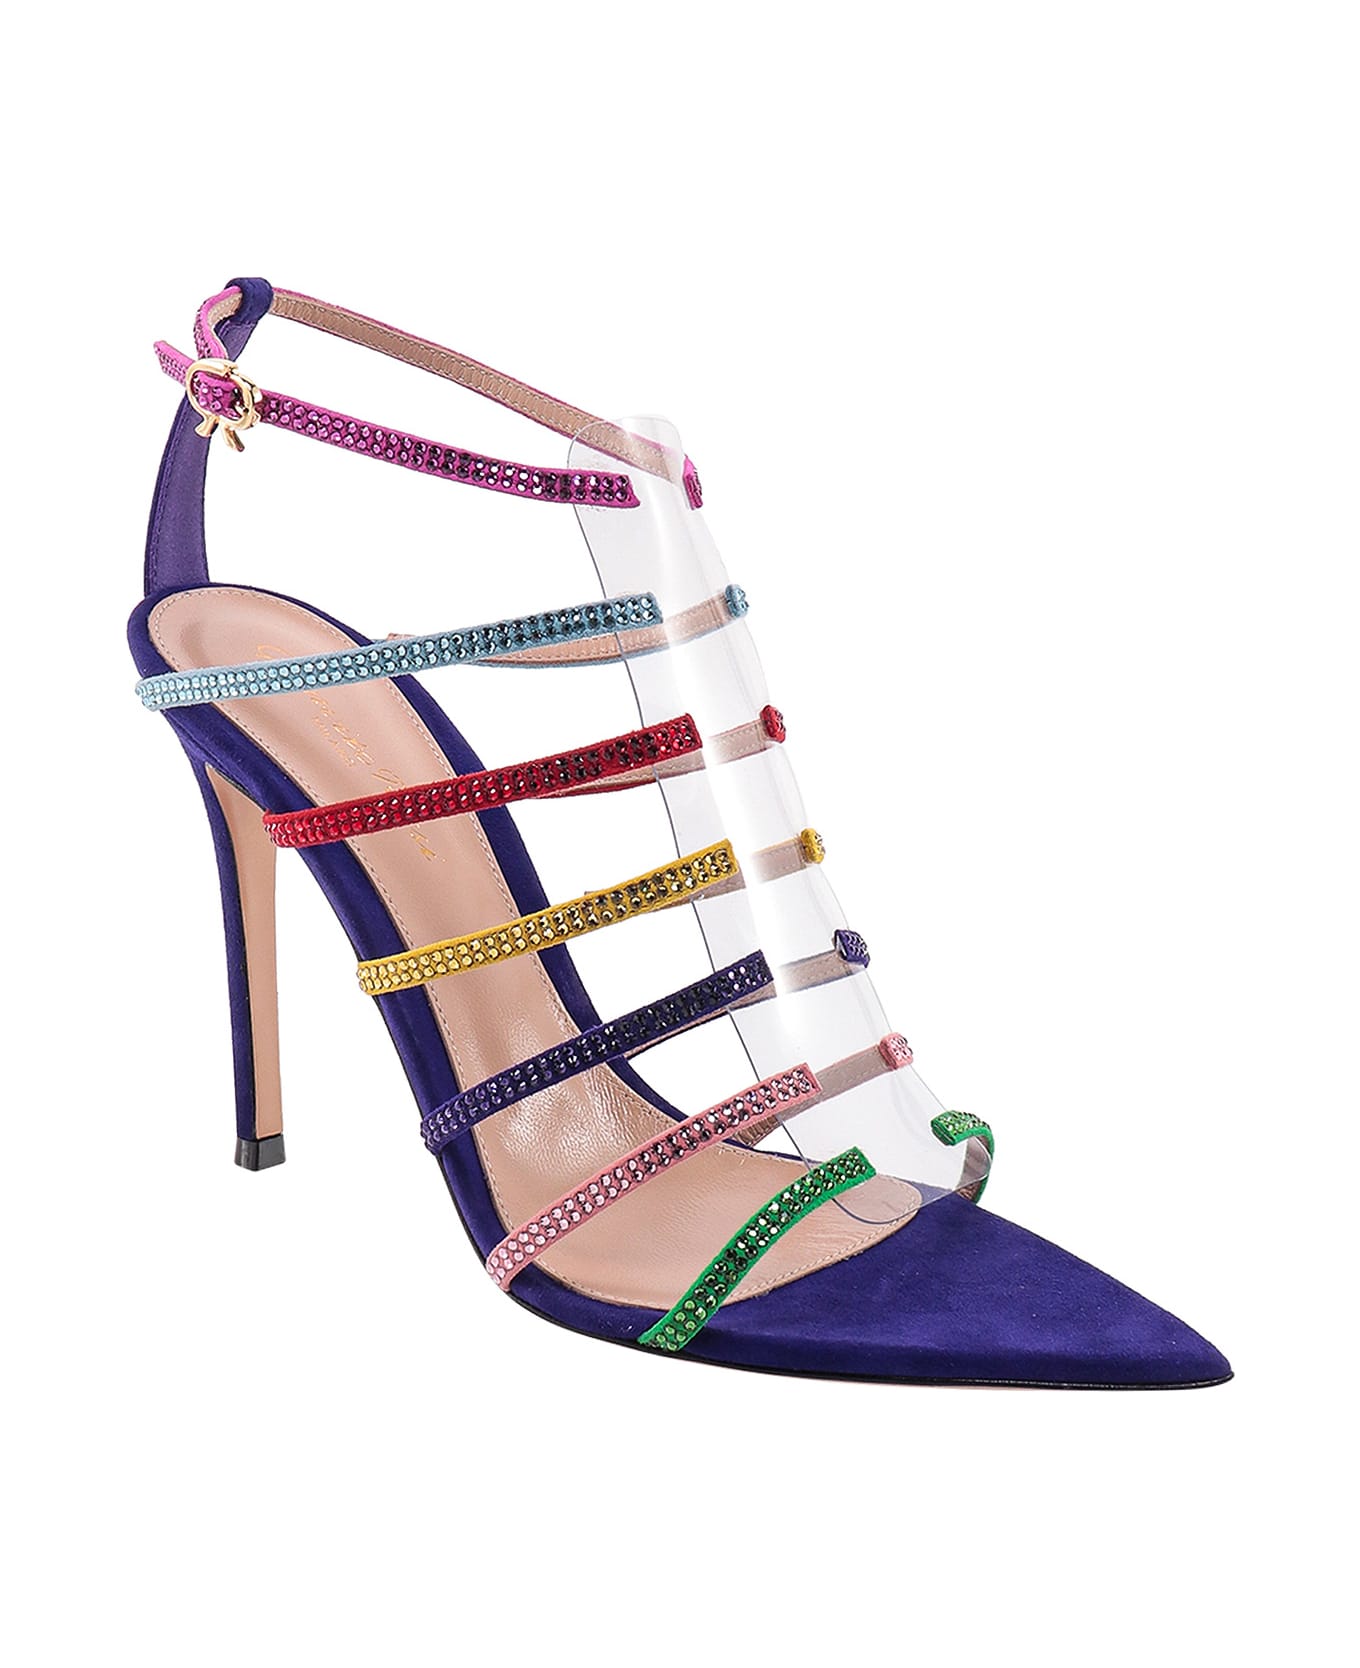 Gianvito Rossi Mirage Sandals - Multicolor